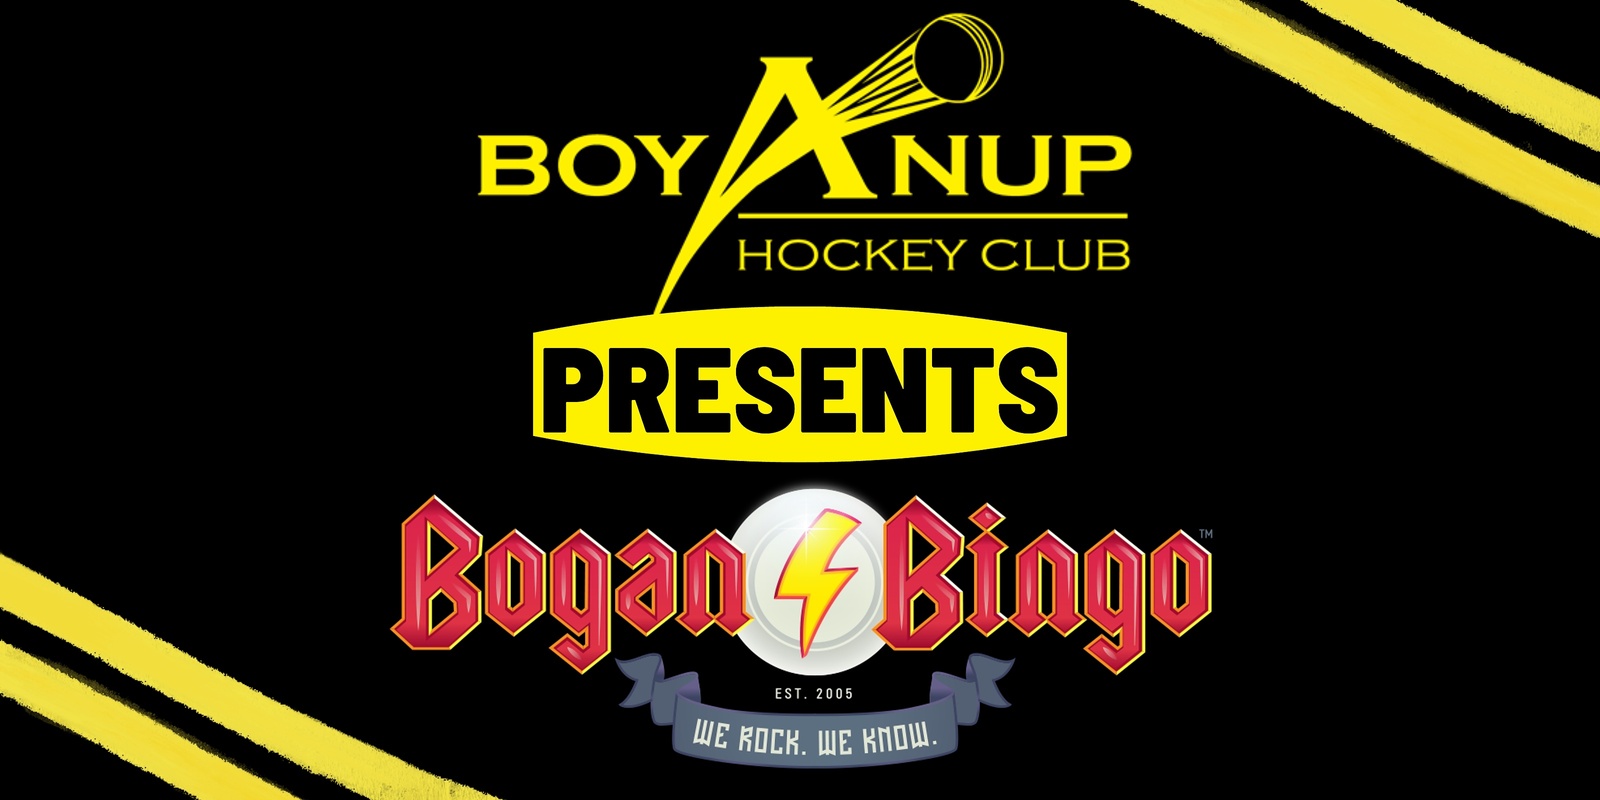 Banner image for Boyanup Hockey Club Bogan Bingo